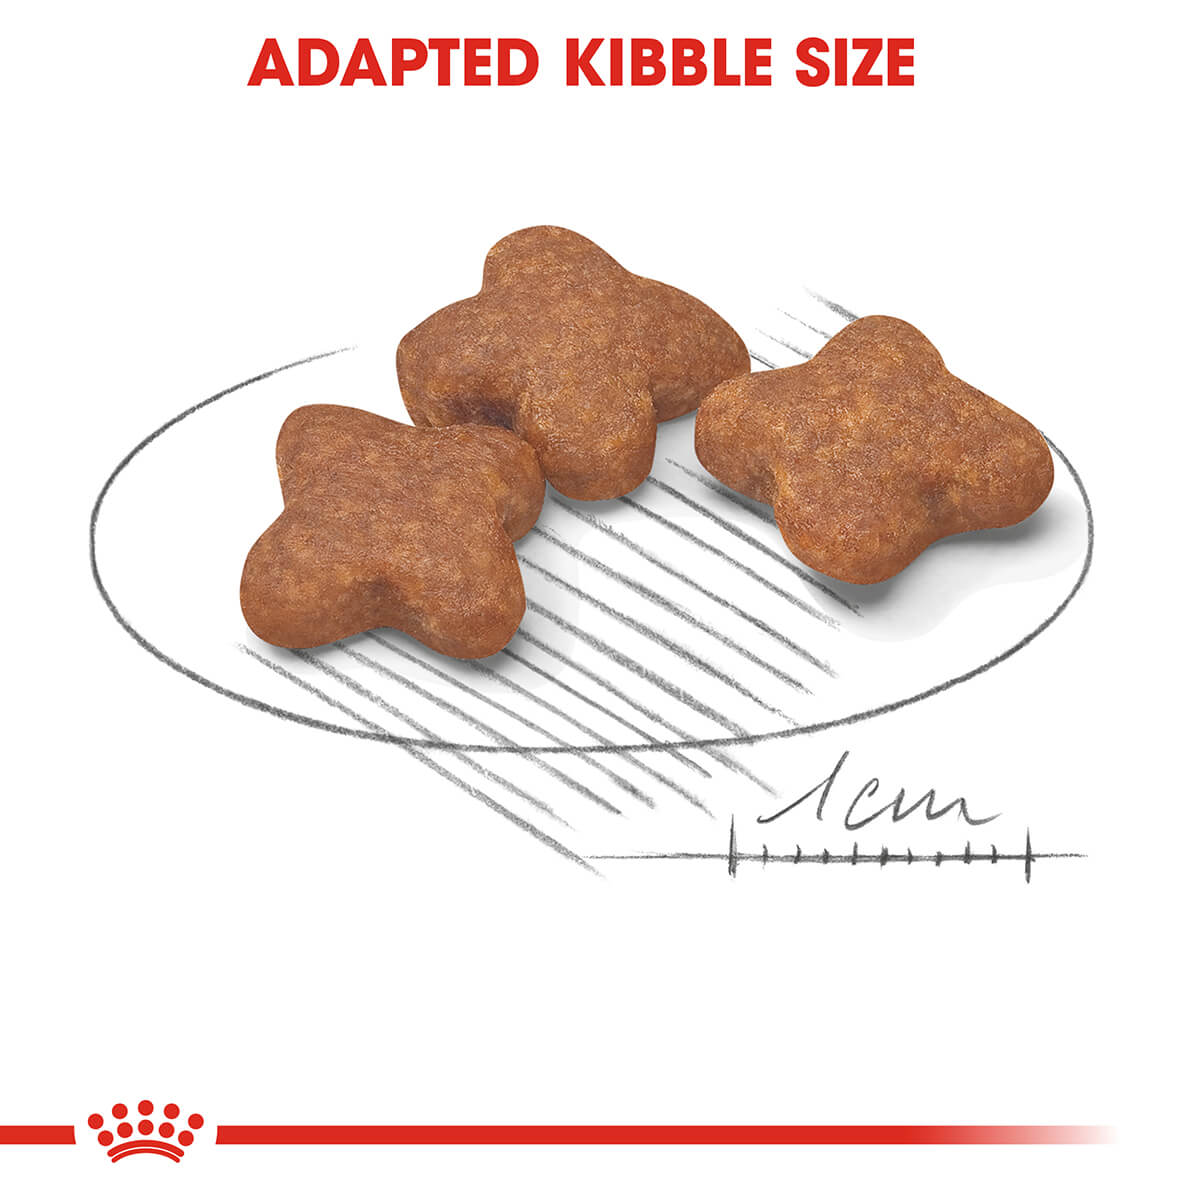 Royal Canin Mini Adult 8+ Dry Dog Food 2kg (122725000124) [default_color]